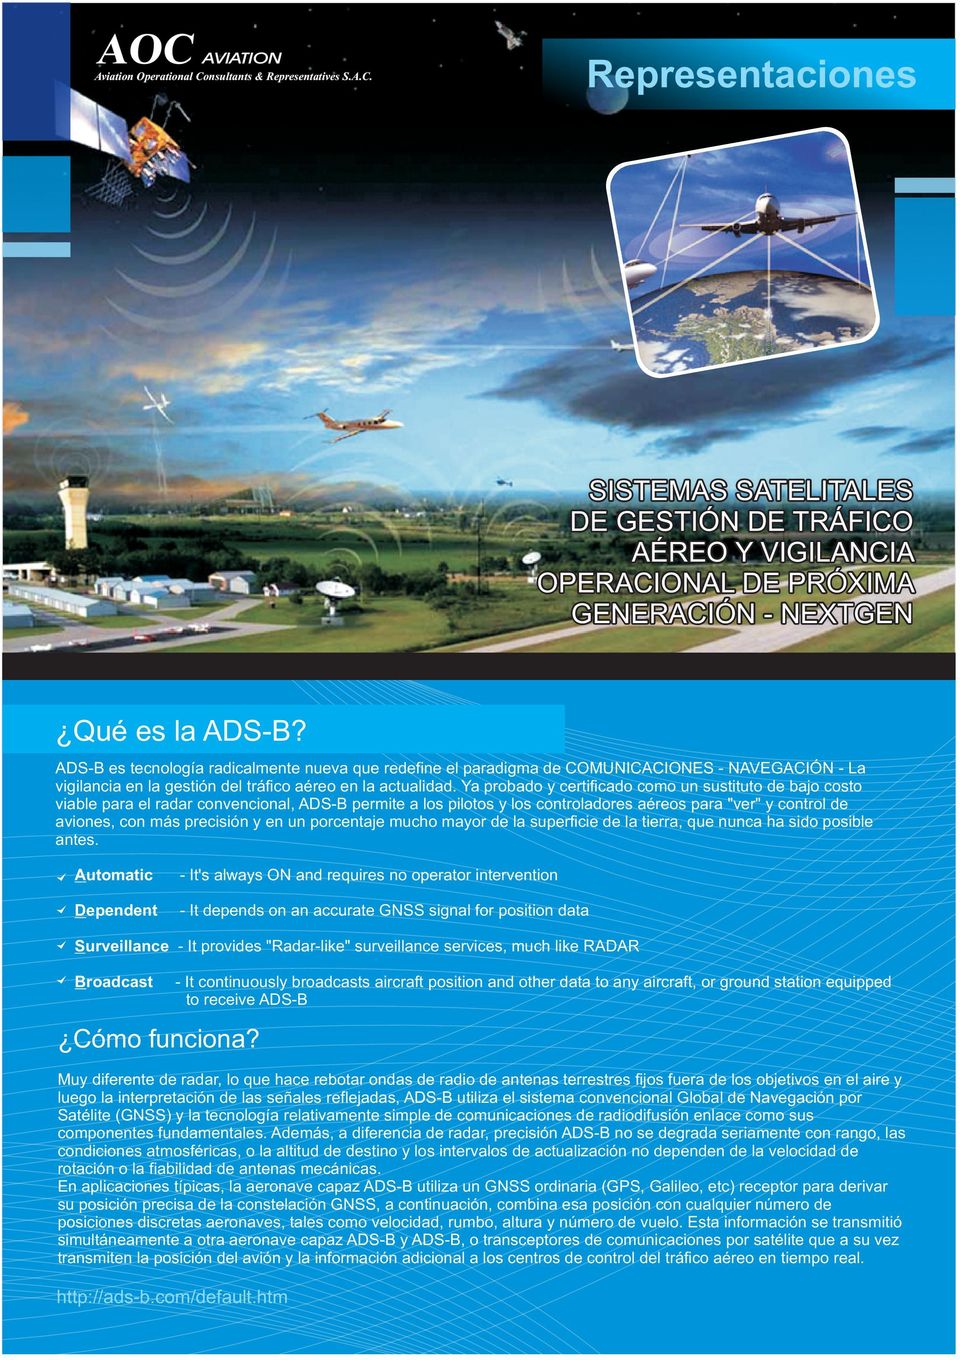 Ya probado y certificado como un sustituto de bajo costo viable para el radar convencional, ADS-B permite a los pilotos y los controladores aéreos para "ver" y control de aviones, con más precisión y